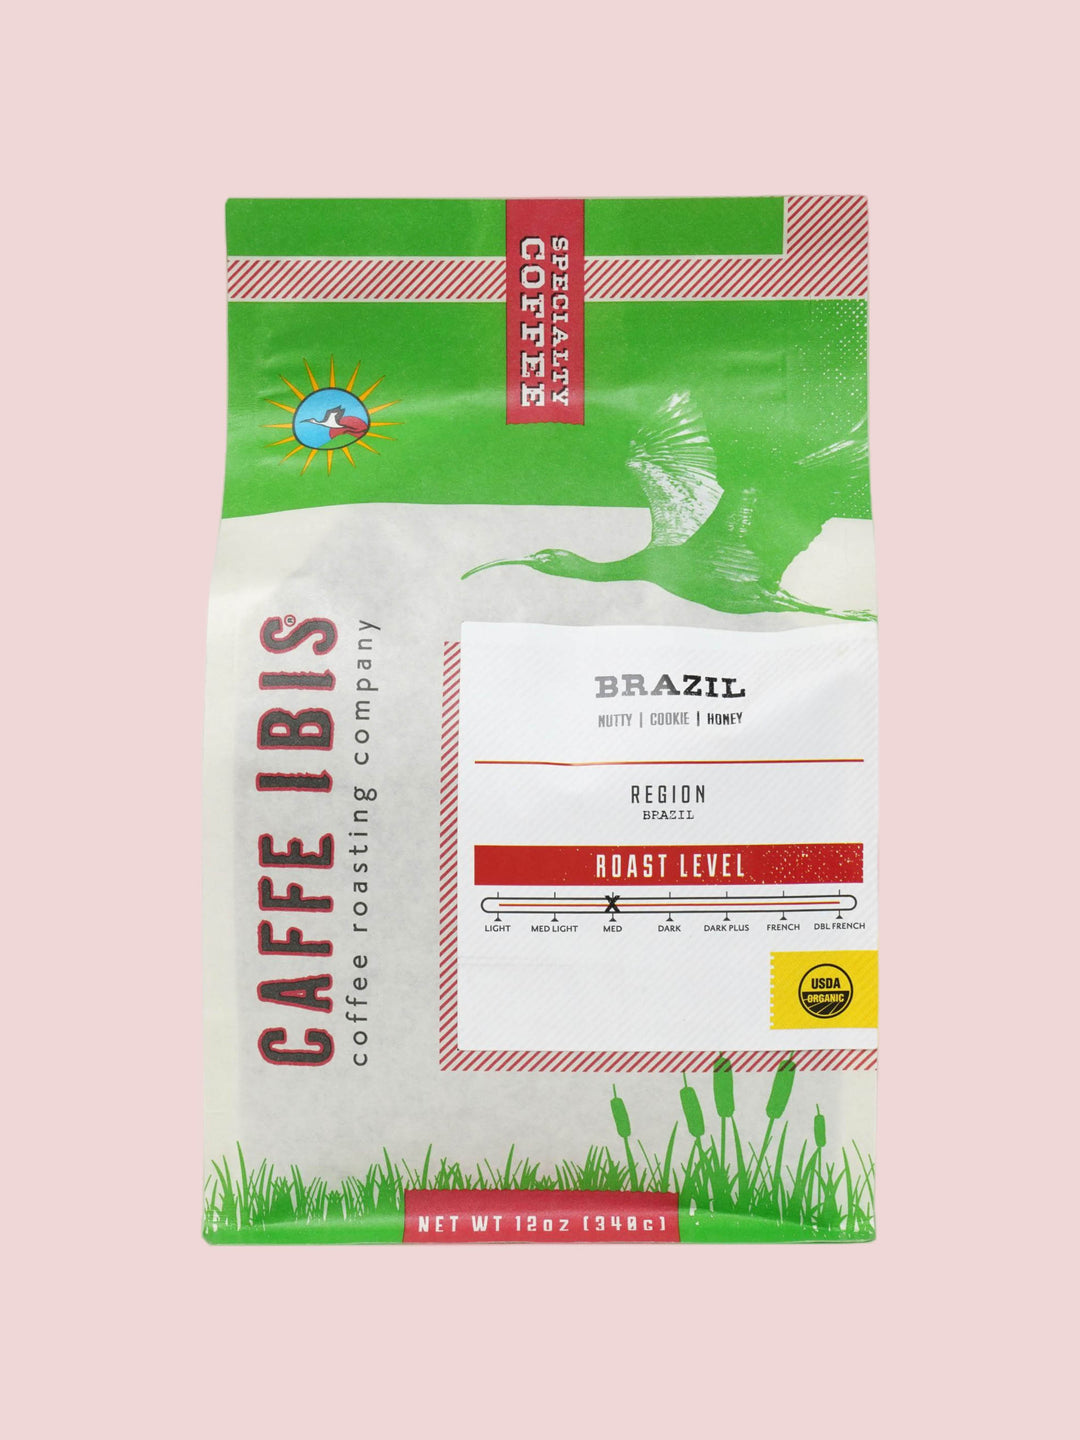 Organic Brazil (fka Chapada) – Caffe Ibis Coffee Roasters